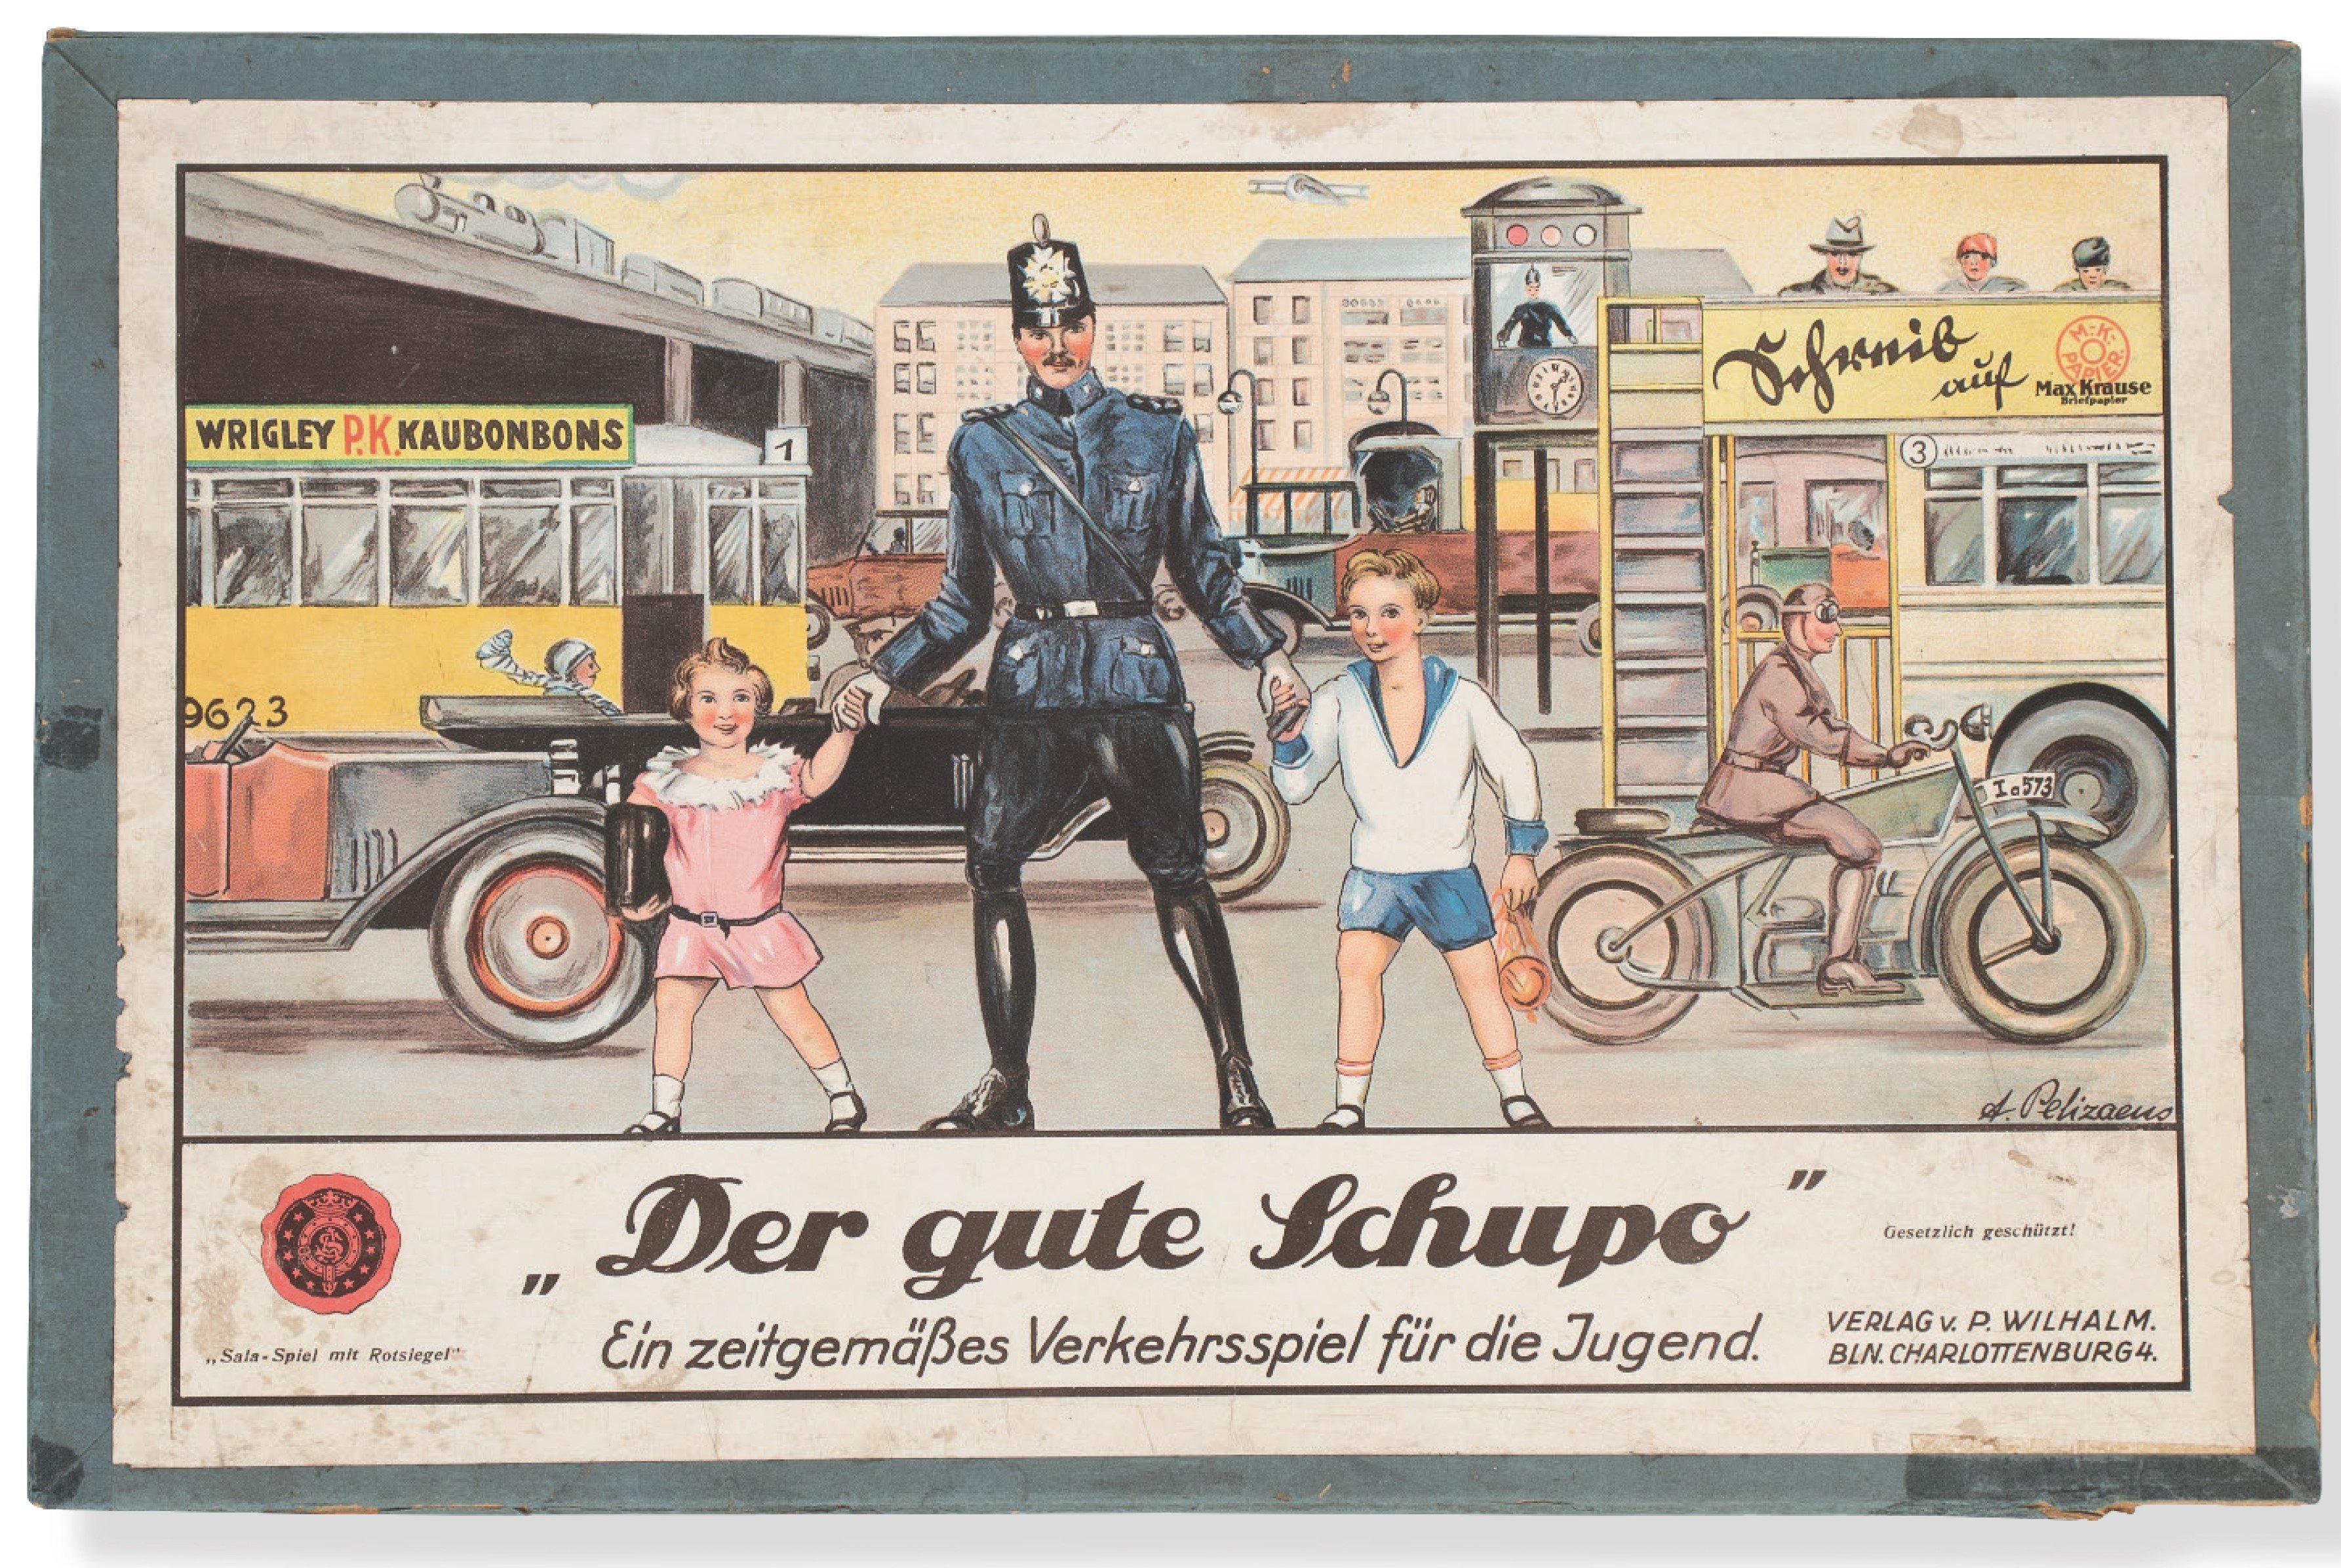 "Der gute Schupo" - Ein zeitgemäßes Verkehrsspiel für die Jugend (Polizeimuseum Niedersachsen CC BY-NC-SA)